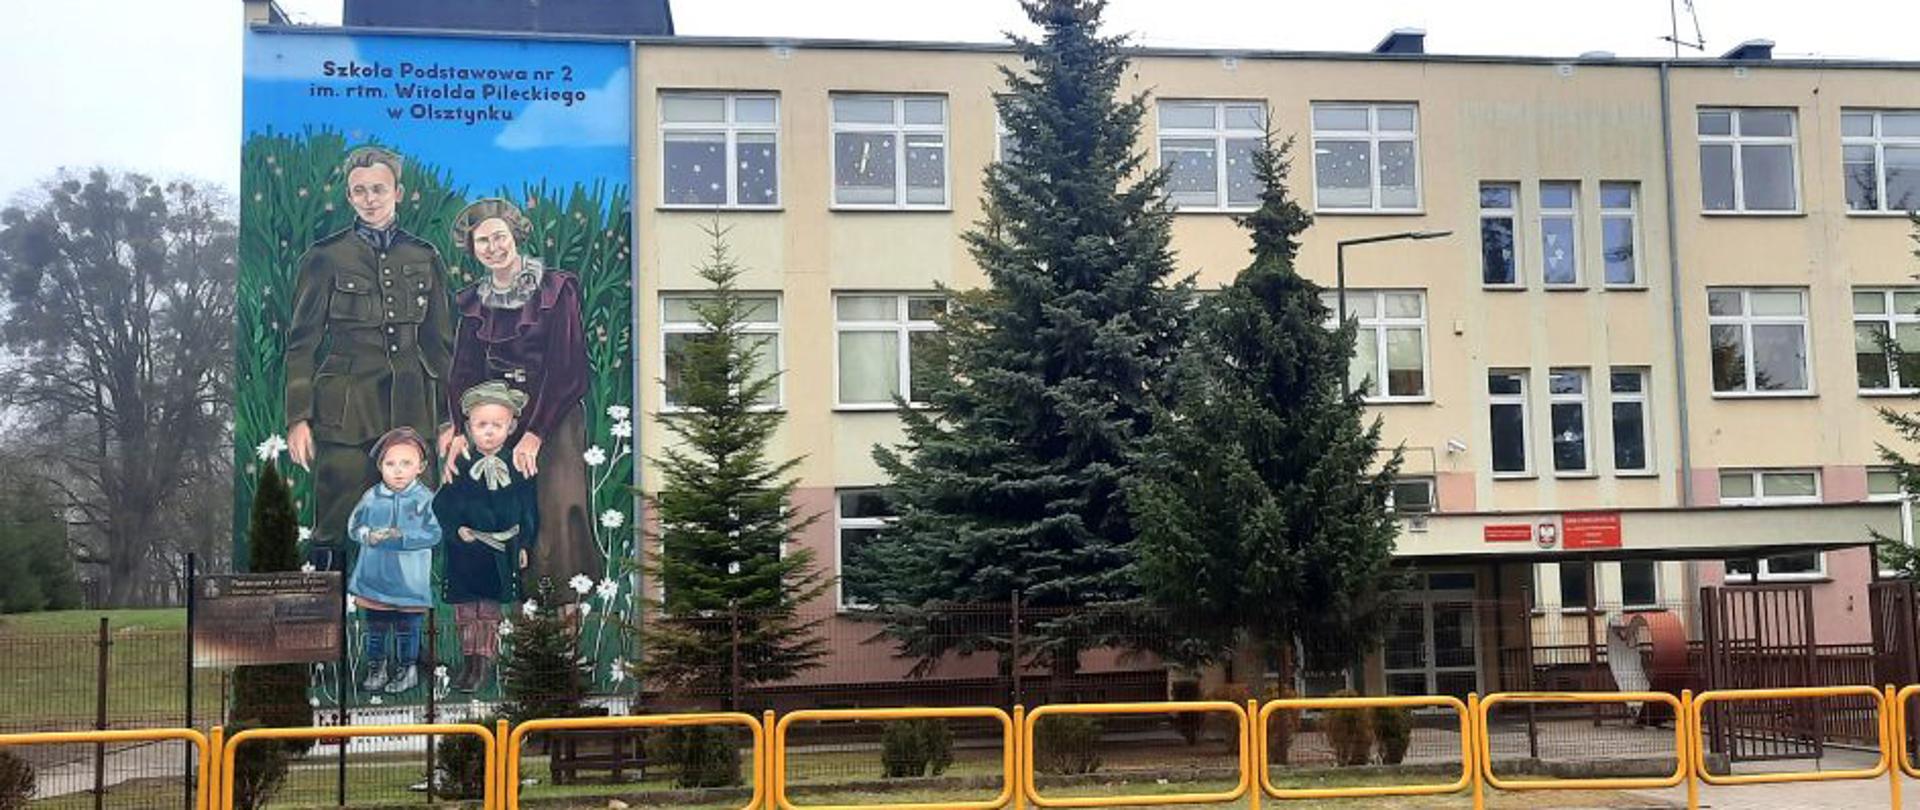 Odsłonięto mural rotmistrza Pileckiego. Zobacz zdjęcia z uroczystości w Olsztynku 